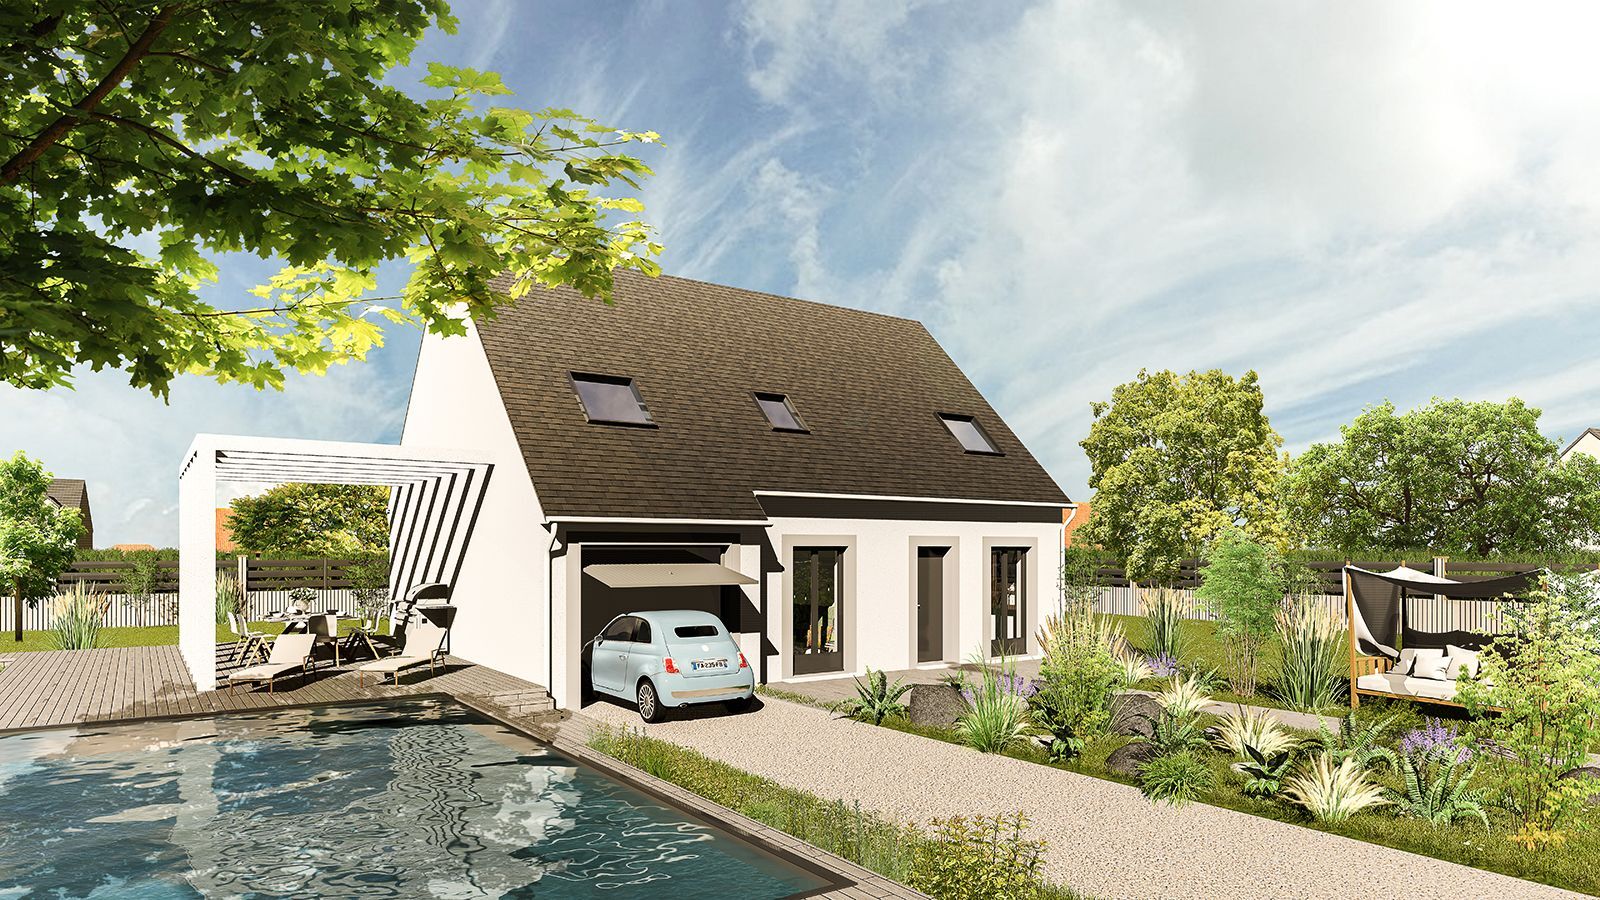 Vente Maison neuve 112 m² à Bouville 214 439 €